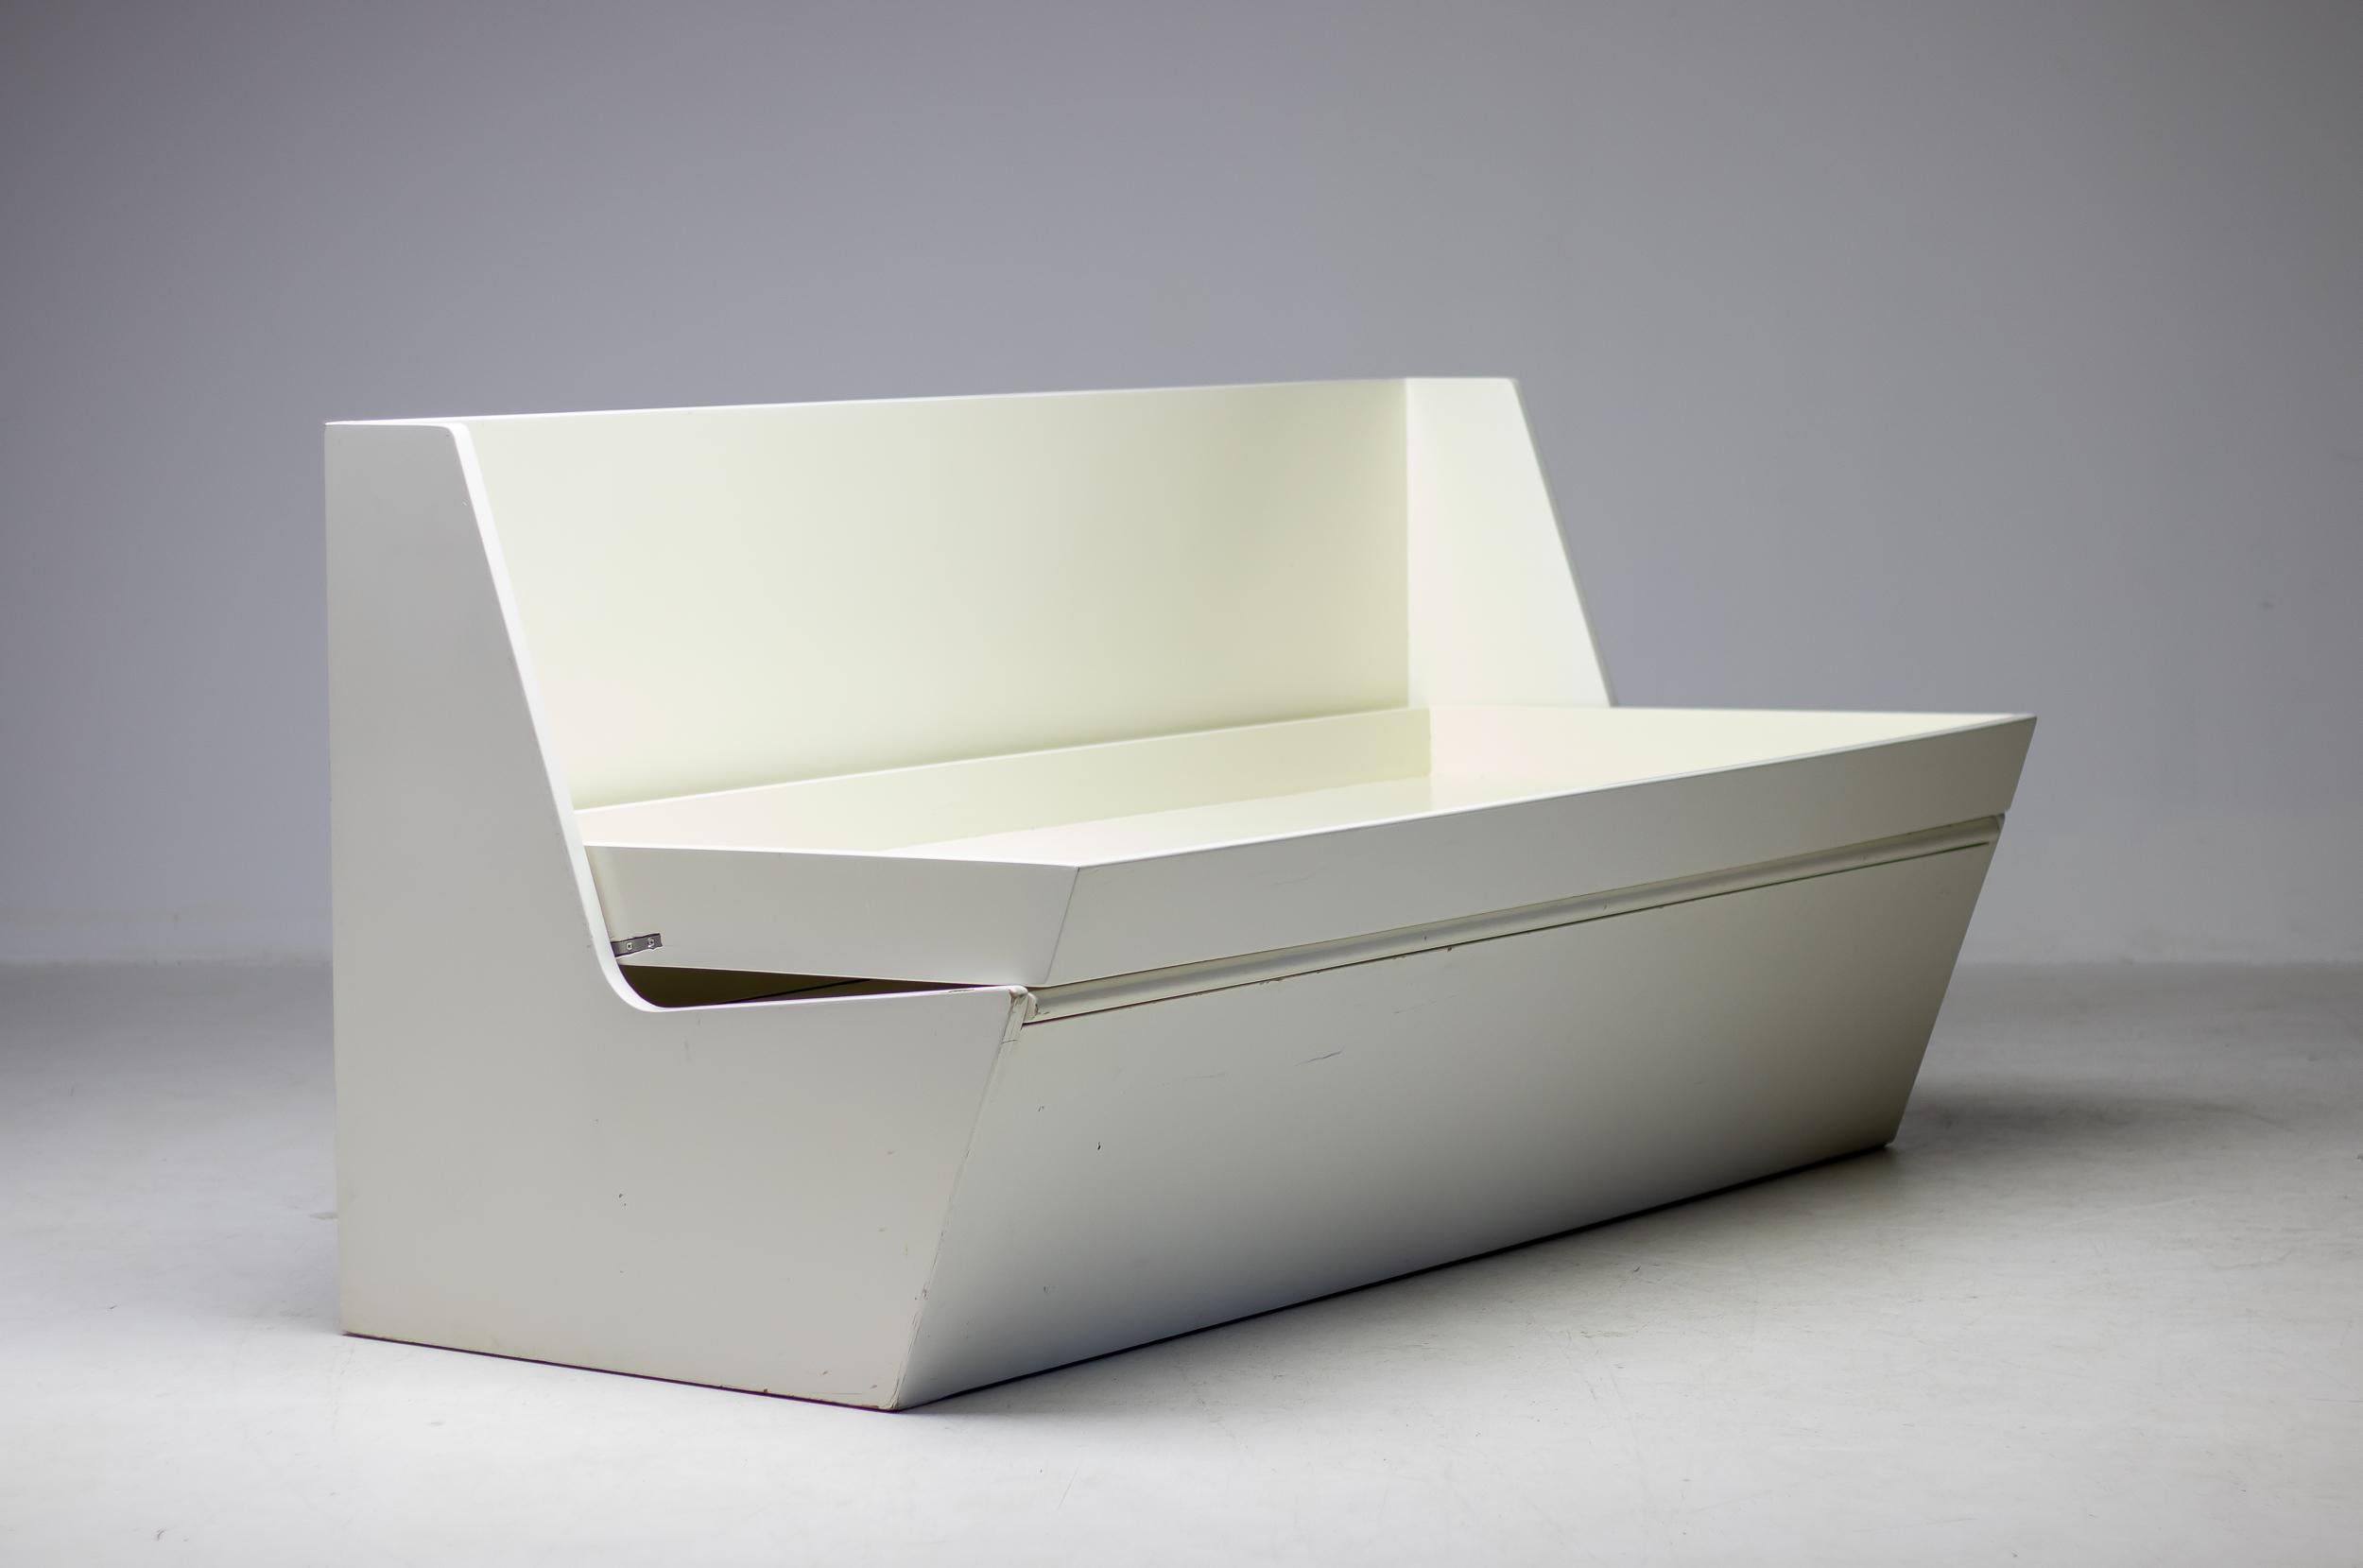 Außergewöhnlich seltenes Original-Schlafsofa R25 von Gerrit Rietveld aus Fichtenholz, entworfen 1936 für Metz & Co. Die Rückenlehne lässt sich zu einem Bett umklappen und der Sitz verdeckt ein Staufach.
Ein ähnliches Exemplar dieses Sofas befindet